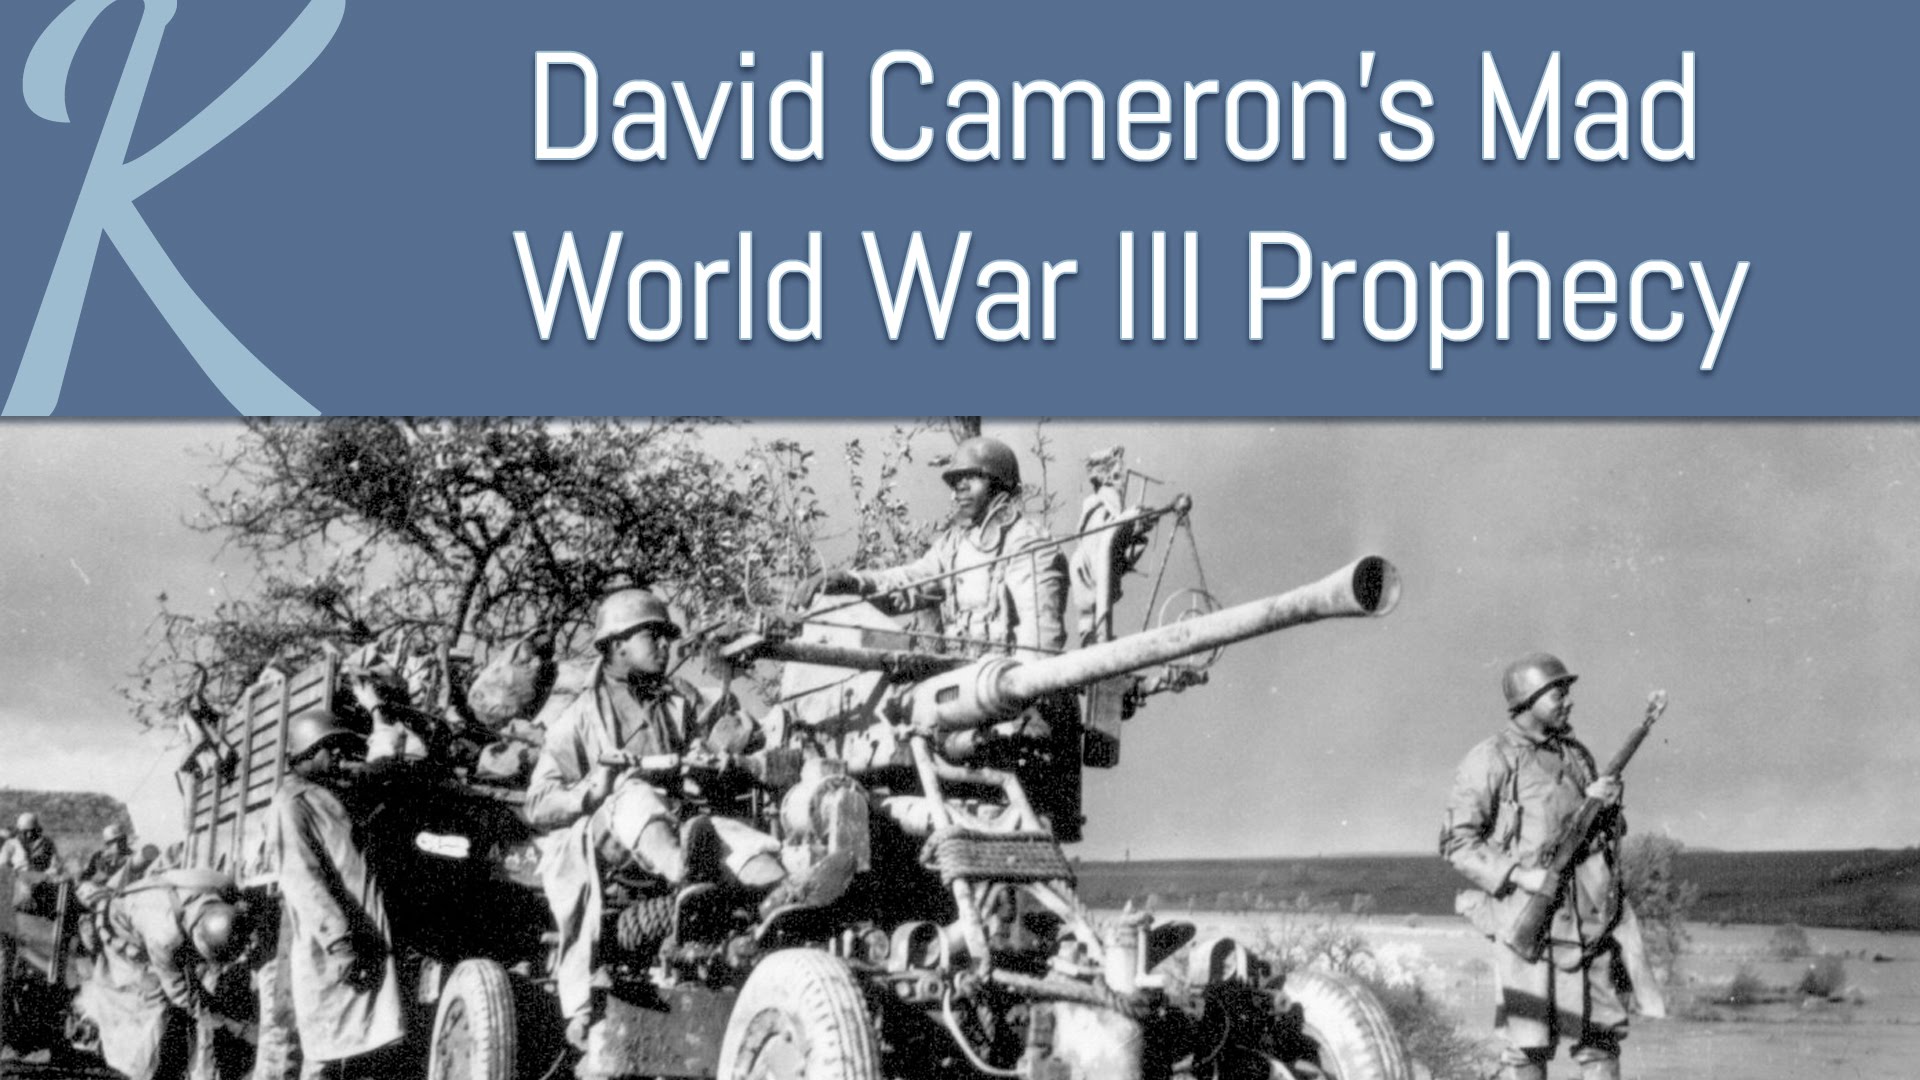 David Cameron’s Mad World War III Prophecy